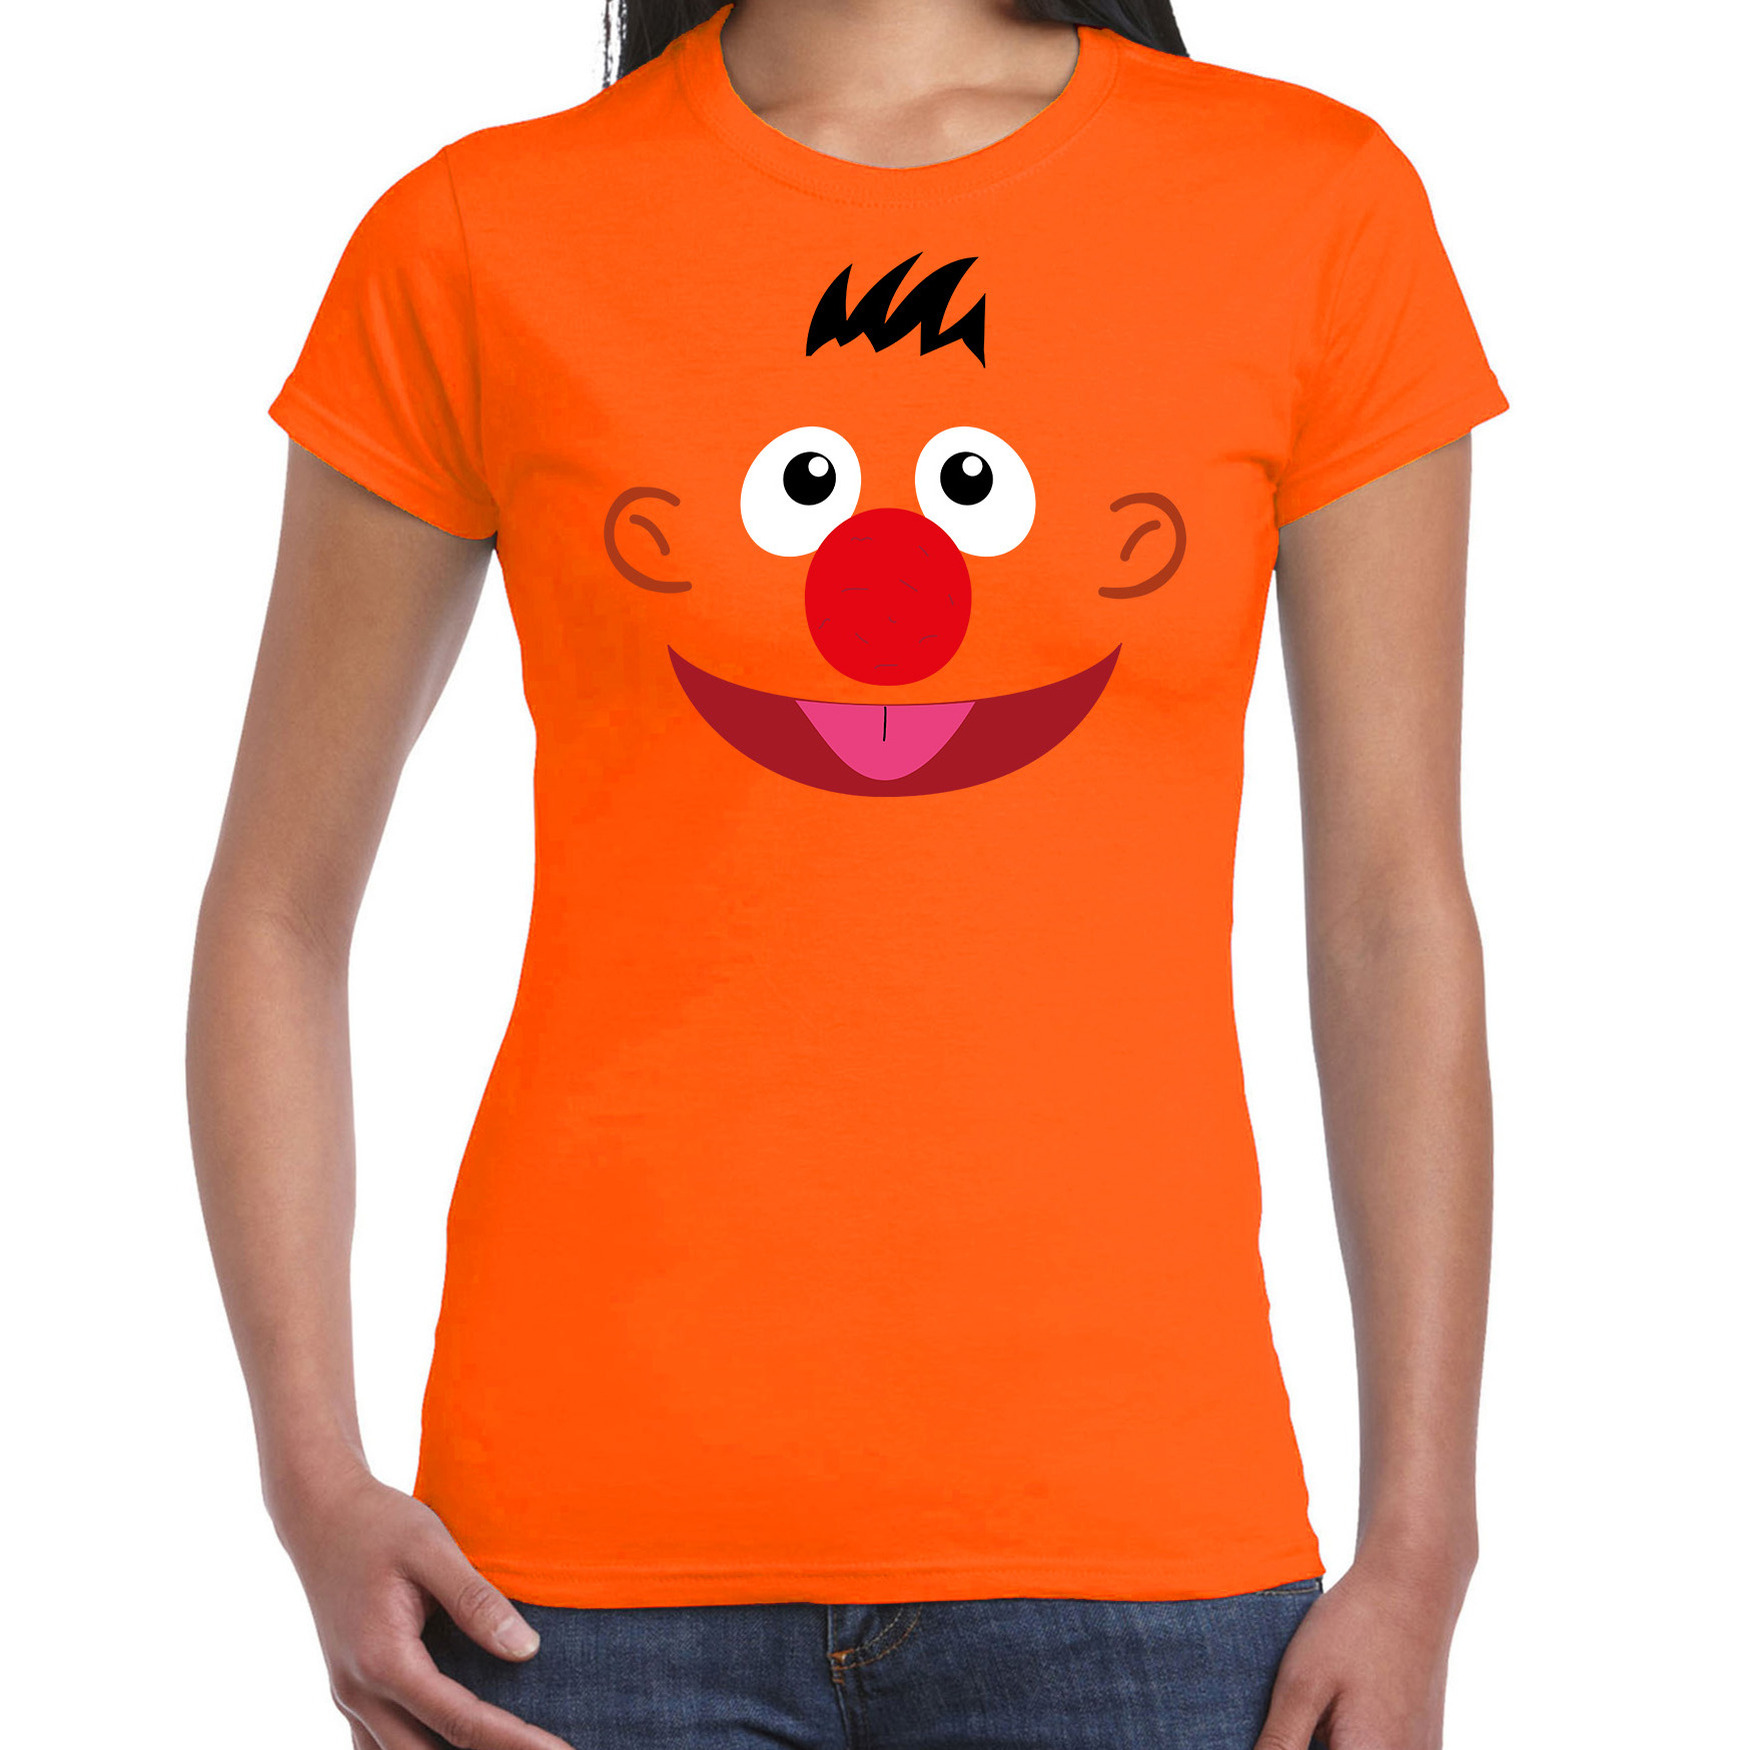 Verkleed-carnaval t-shirt oranje cartoon knuffel pop voor dames Verkleed-kostuum shirts